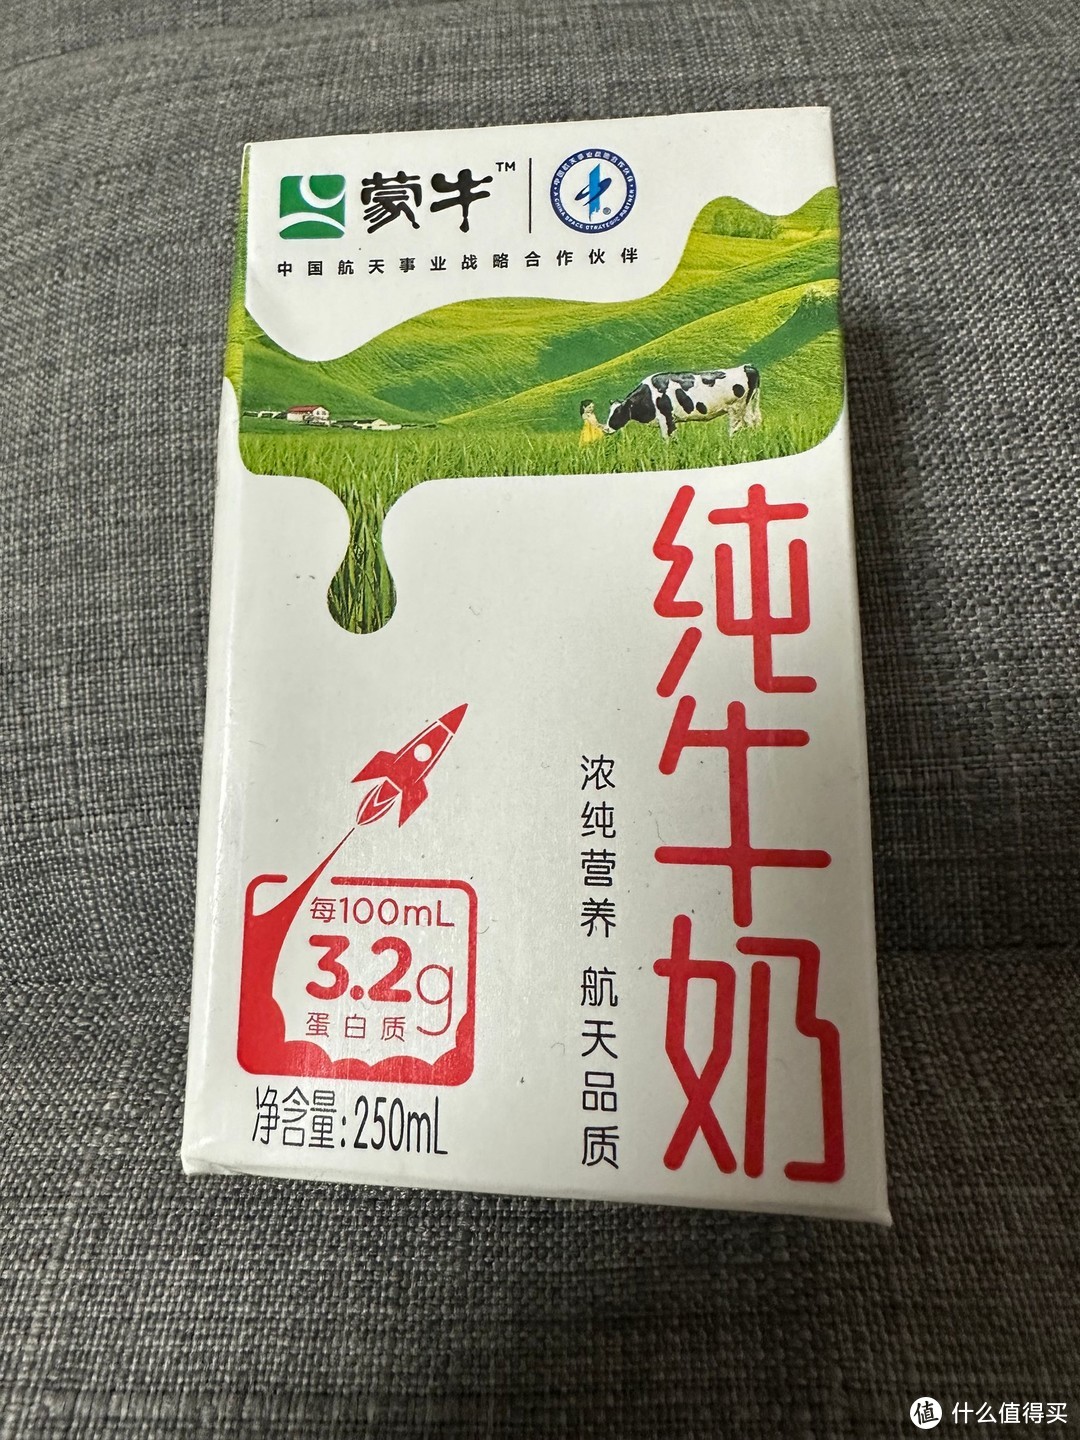 春季饮品大赏…牛奶我选蒙牛纯牛奶。